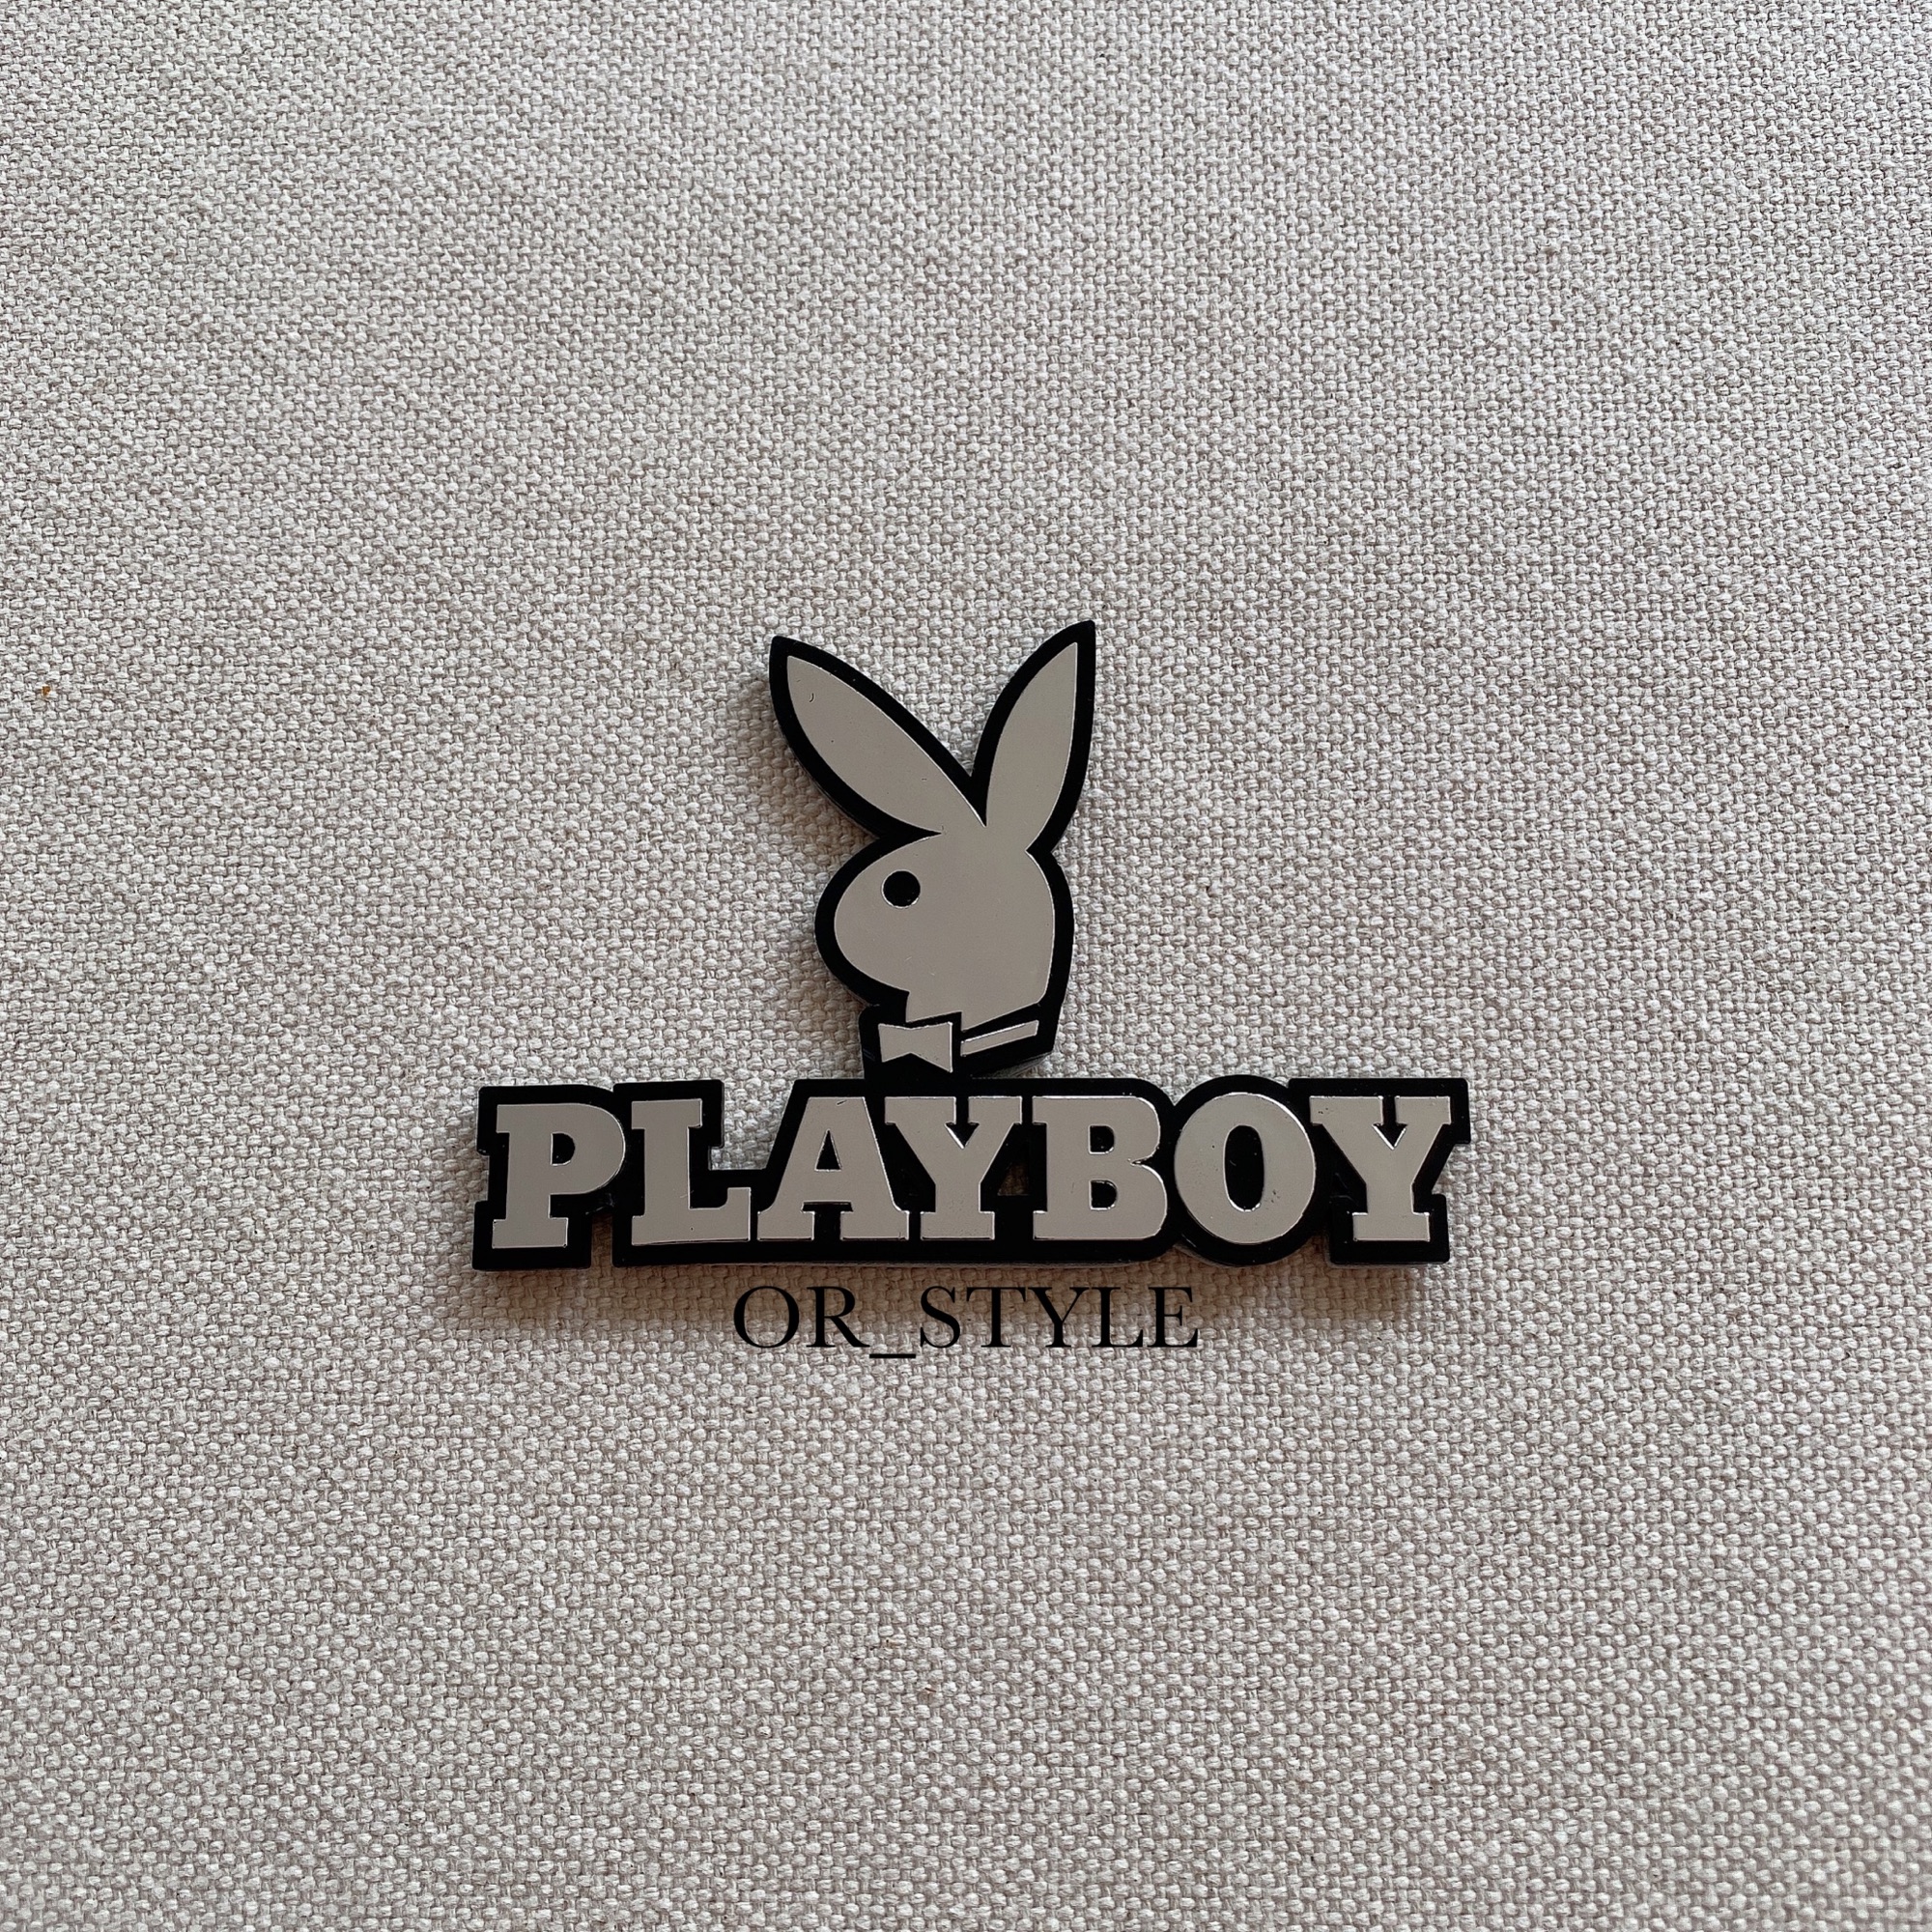 โลโก้ PLAYBOY หัวกระต่ายเพลย์บอย ขนาด 9.5x6.5cm